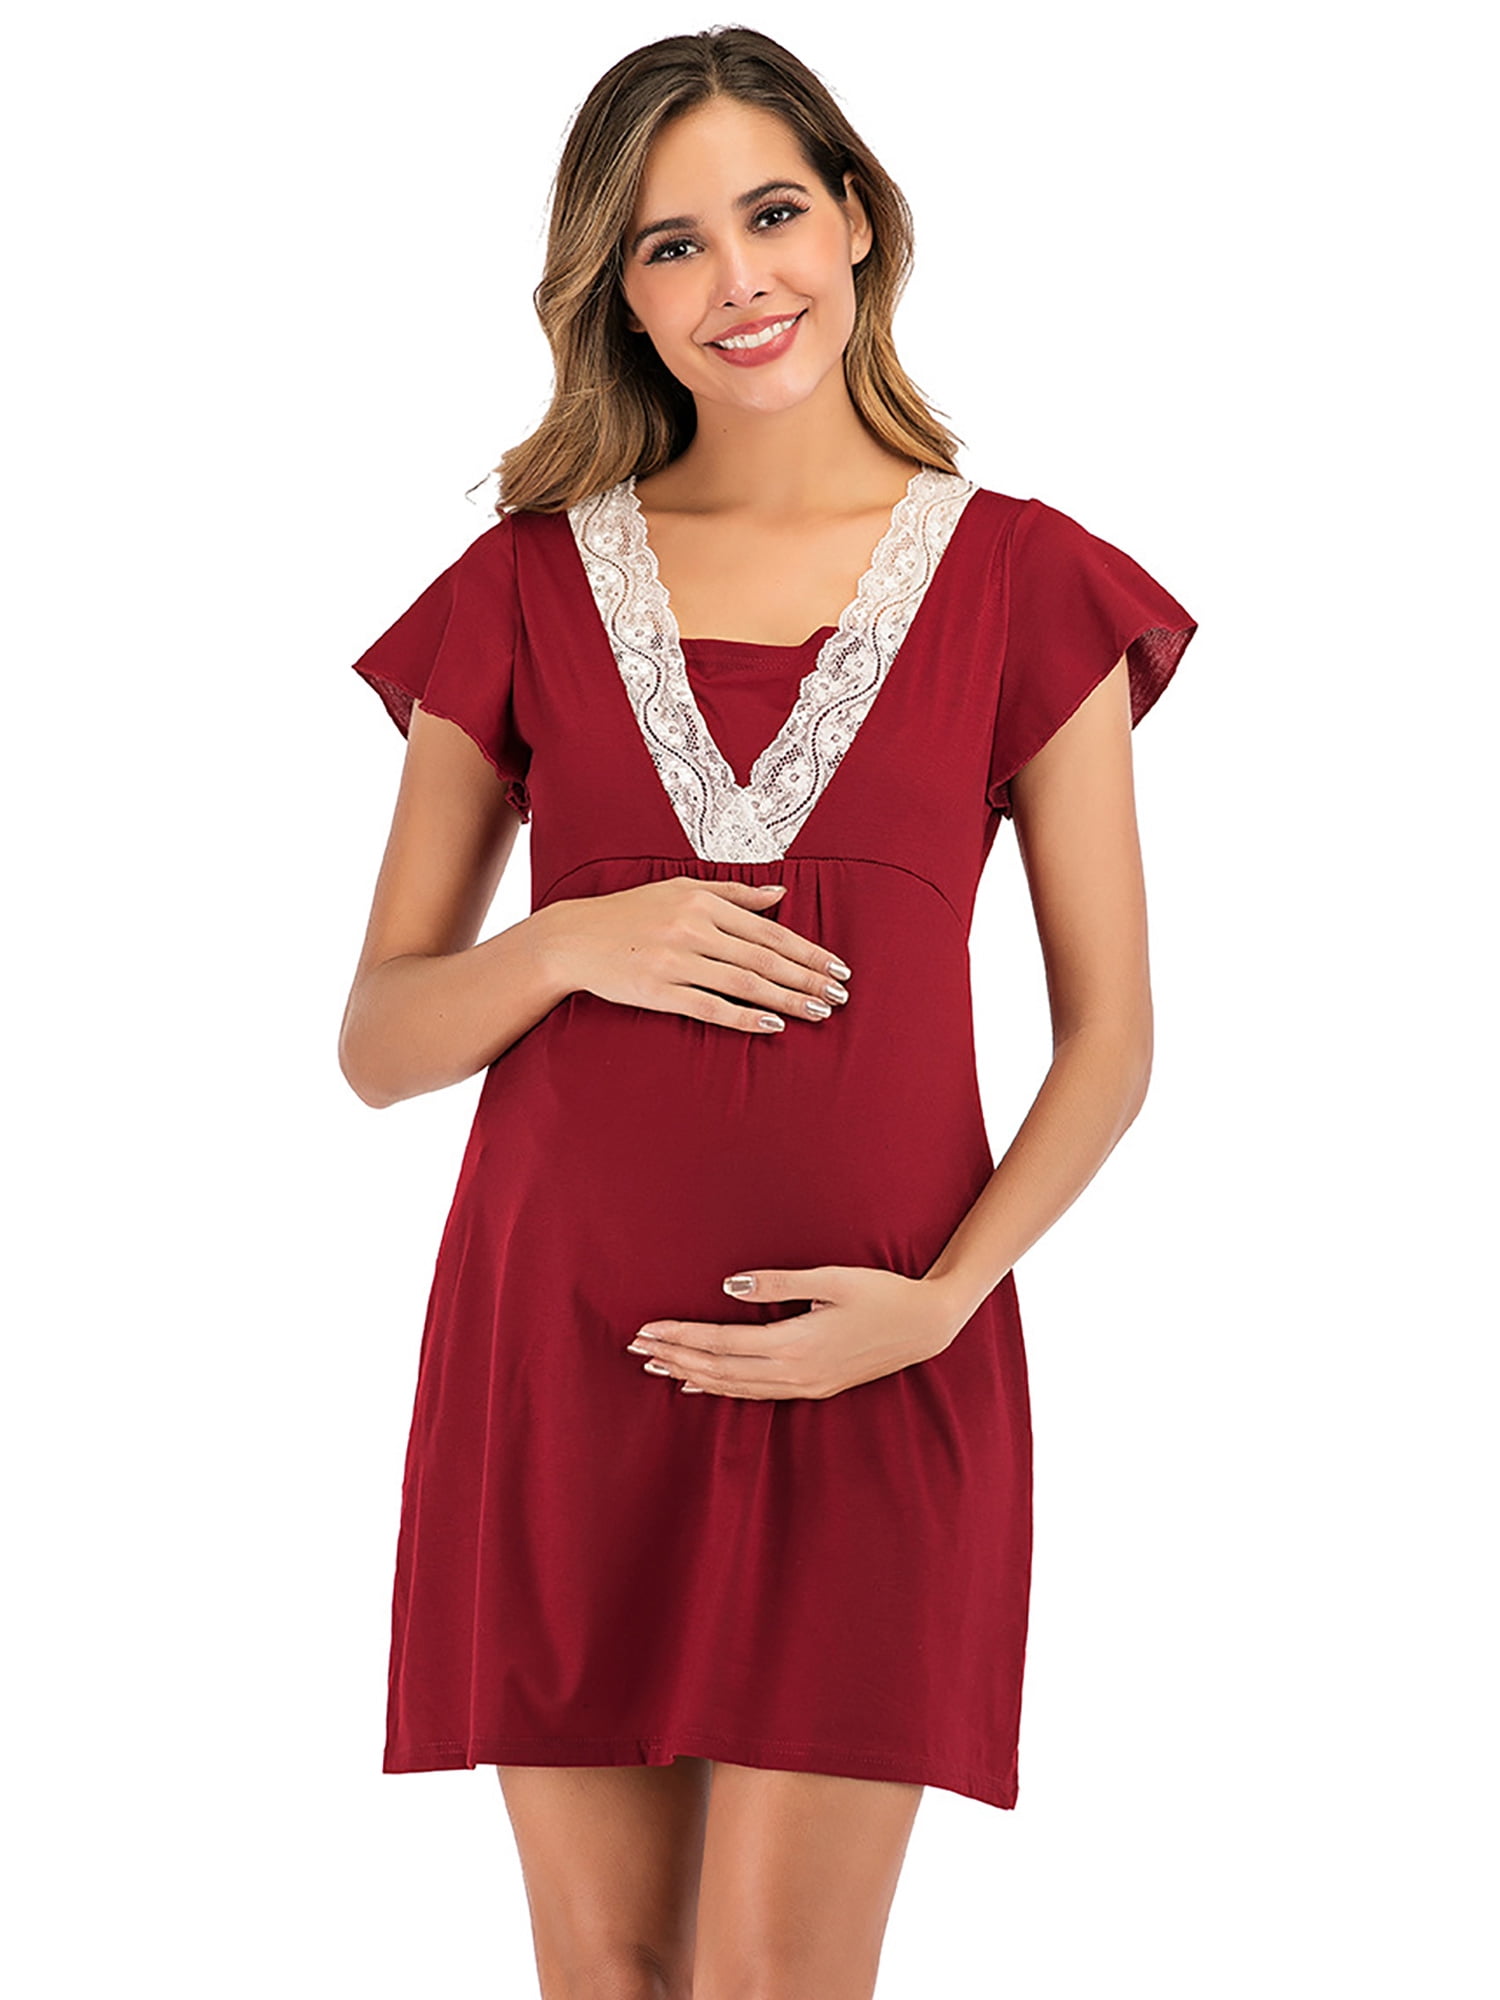 Selfieee - Selfieee Women's Plus Size Maternity Dress Nursing Nightgown ...